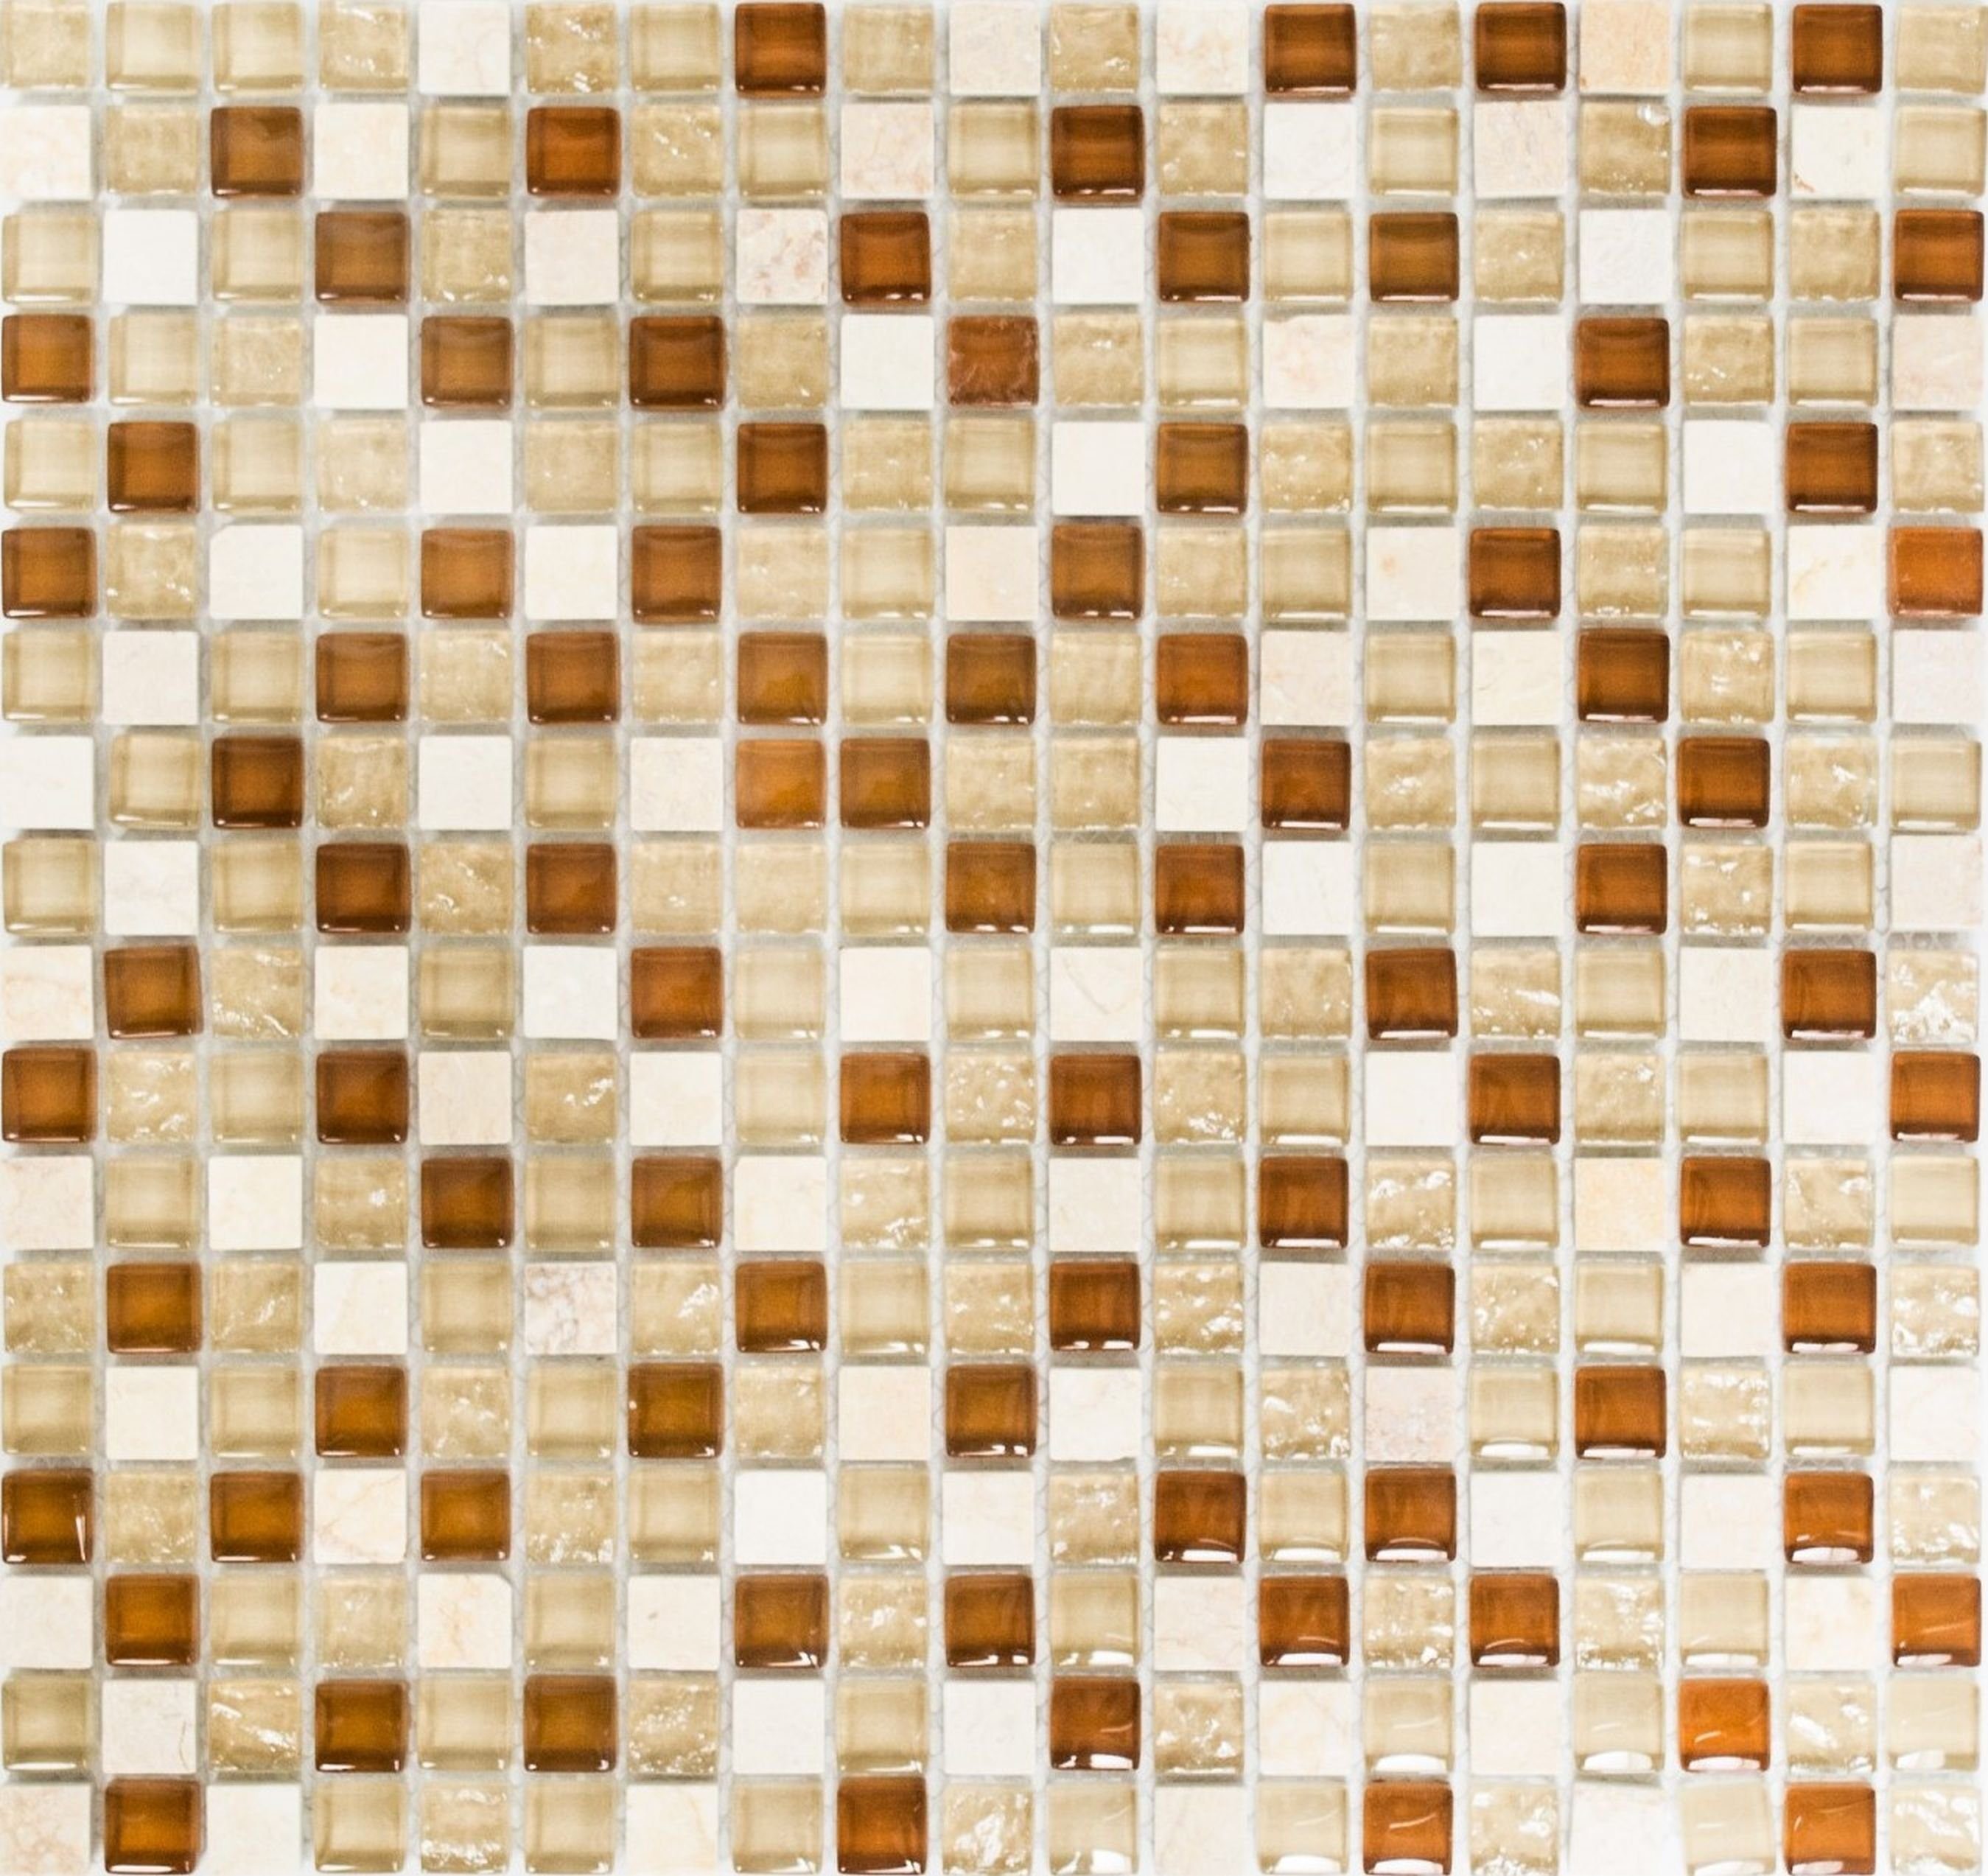 Mosani Mosaikfliesen Glasmosaik Naturstein beige creme Mosaikfliese ockerbraun